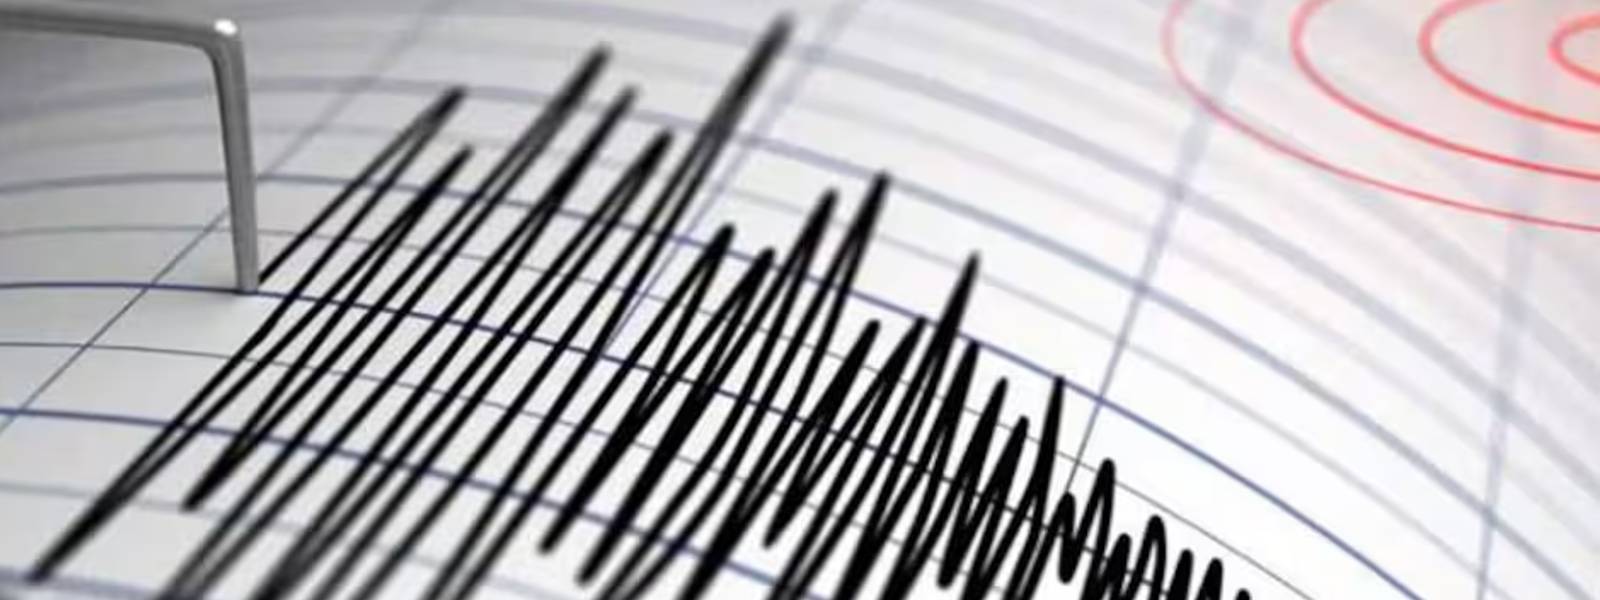 Minor tremor in Trincomalee